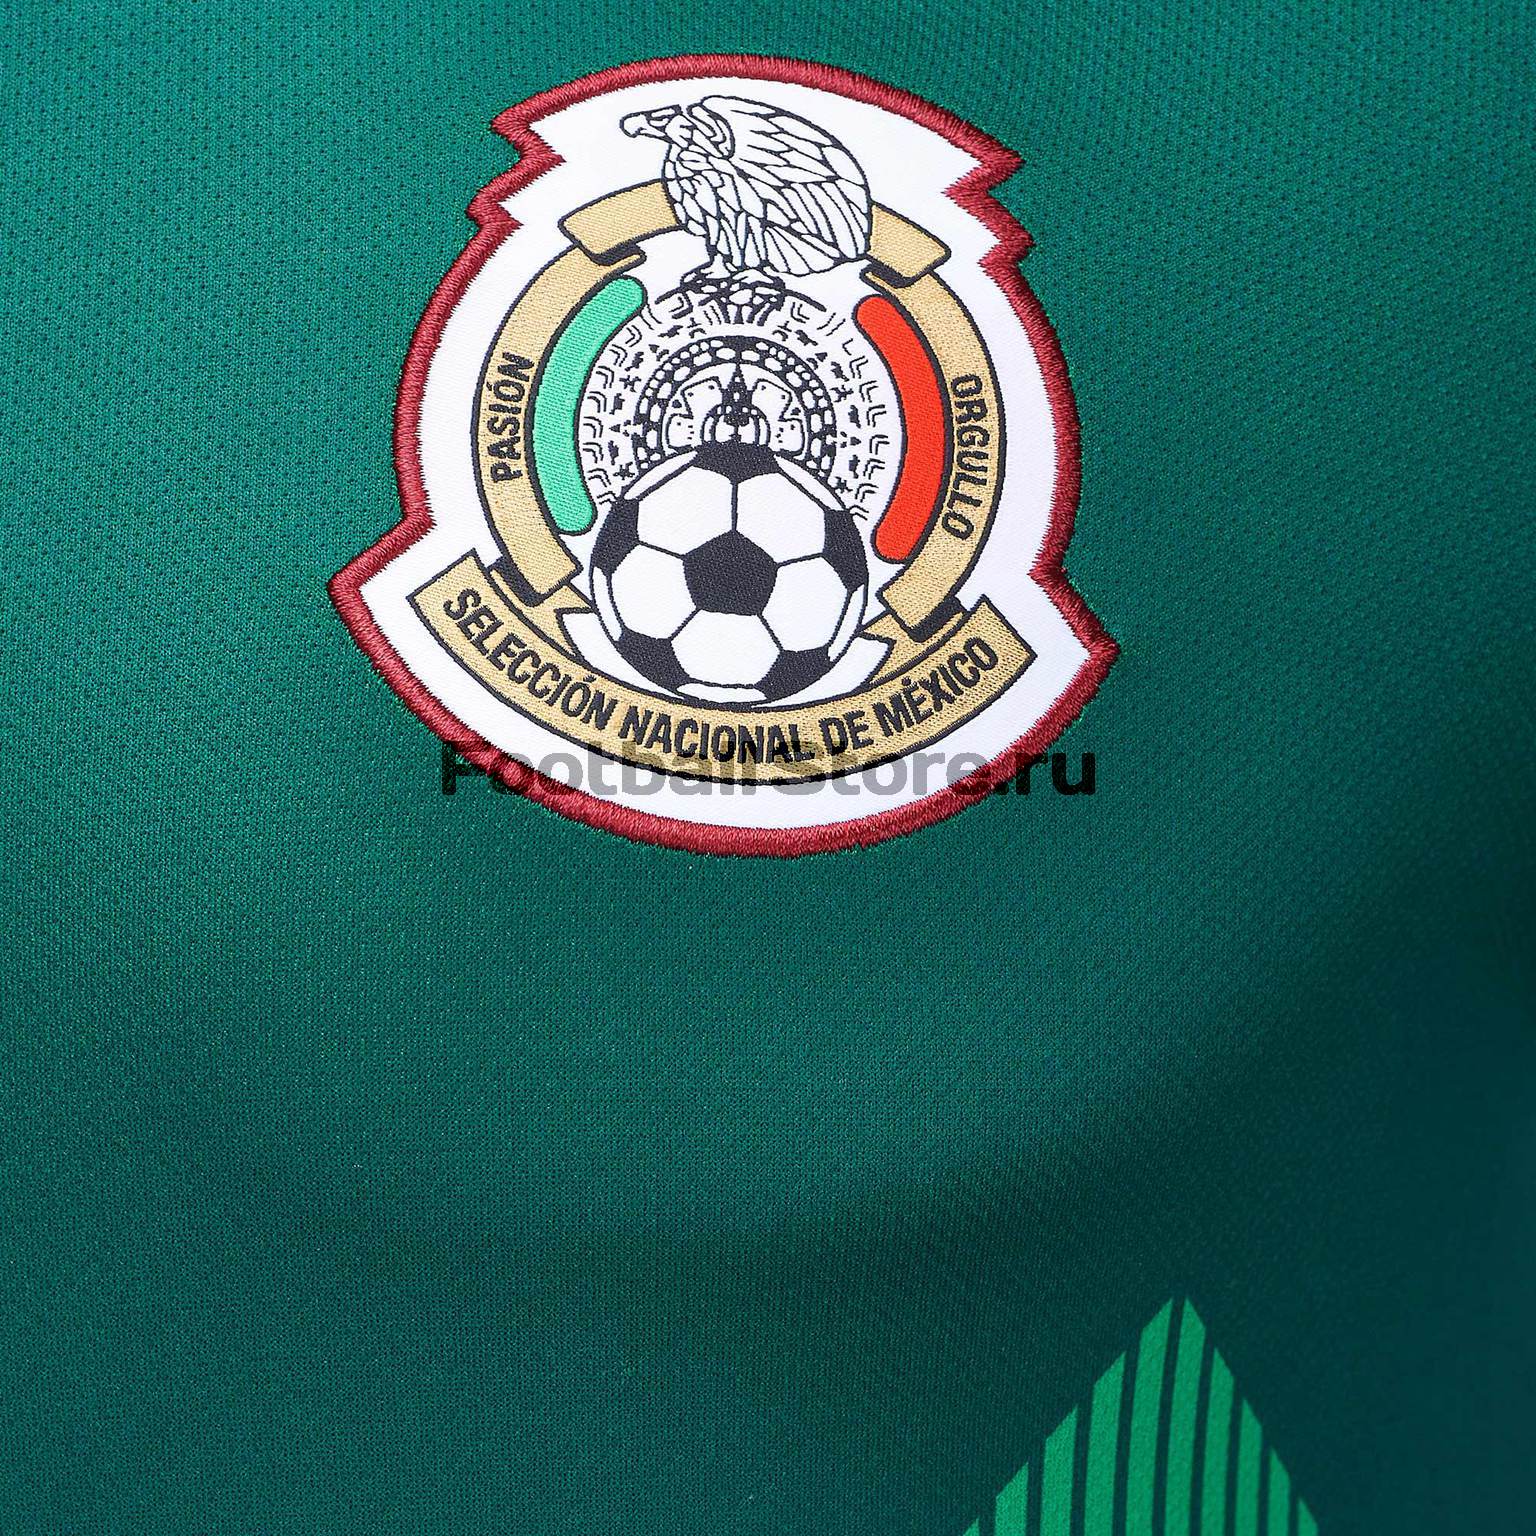 Домашняя игровая футболка Adidas сборной Мексики BQ4701